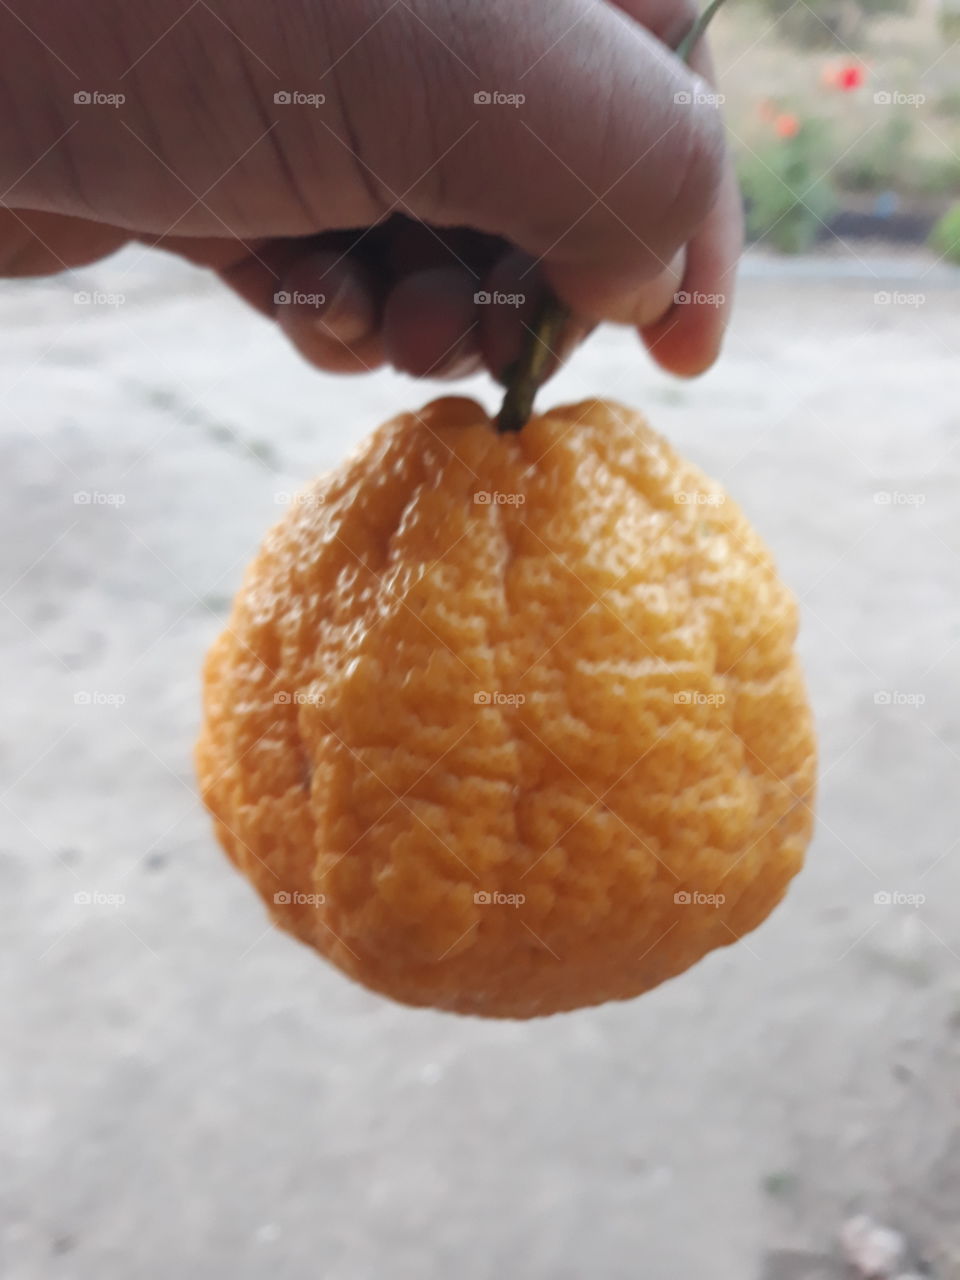 Rara variedad de limón con piel arrugada, parece una naranja.